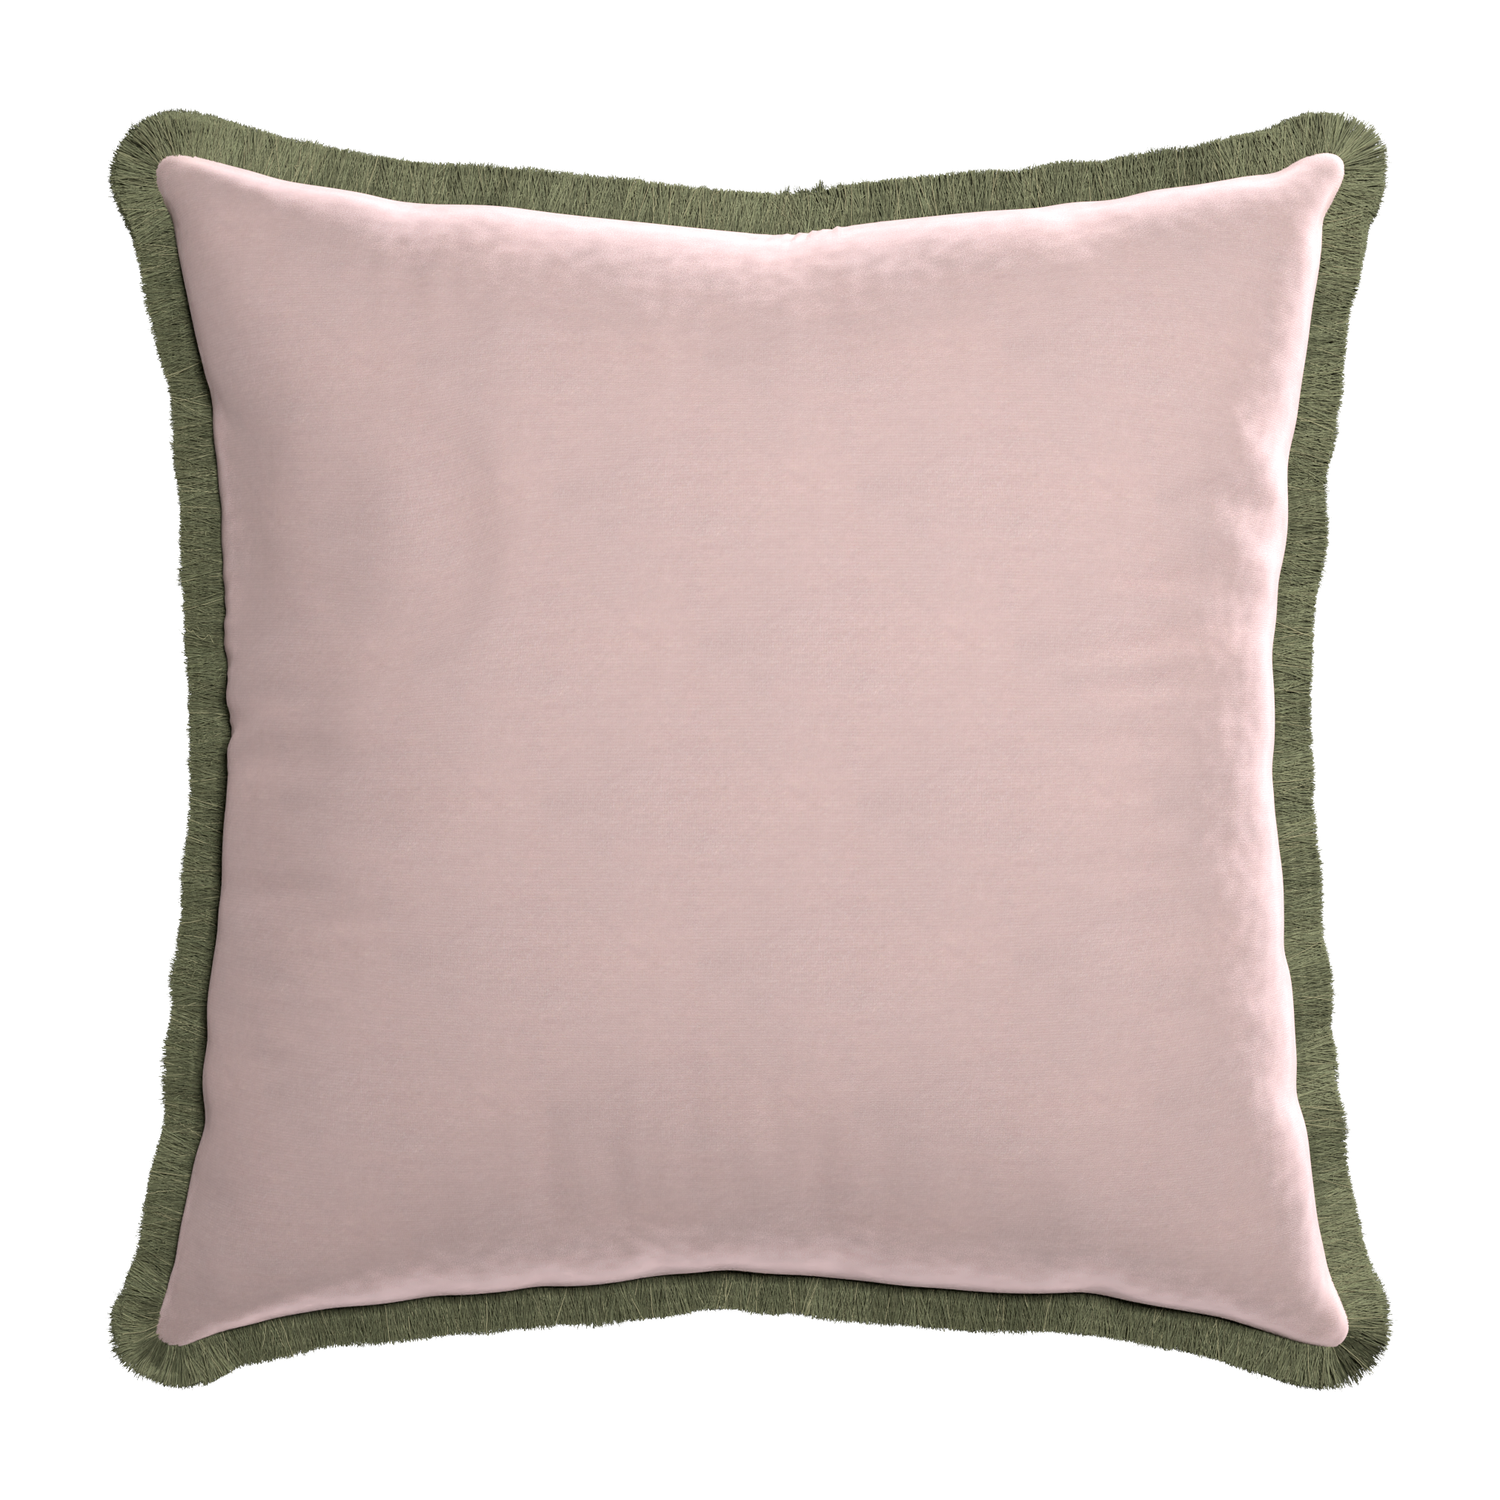 Euro-sham rose velvet custom pillow with sage fringe on white background